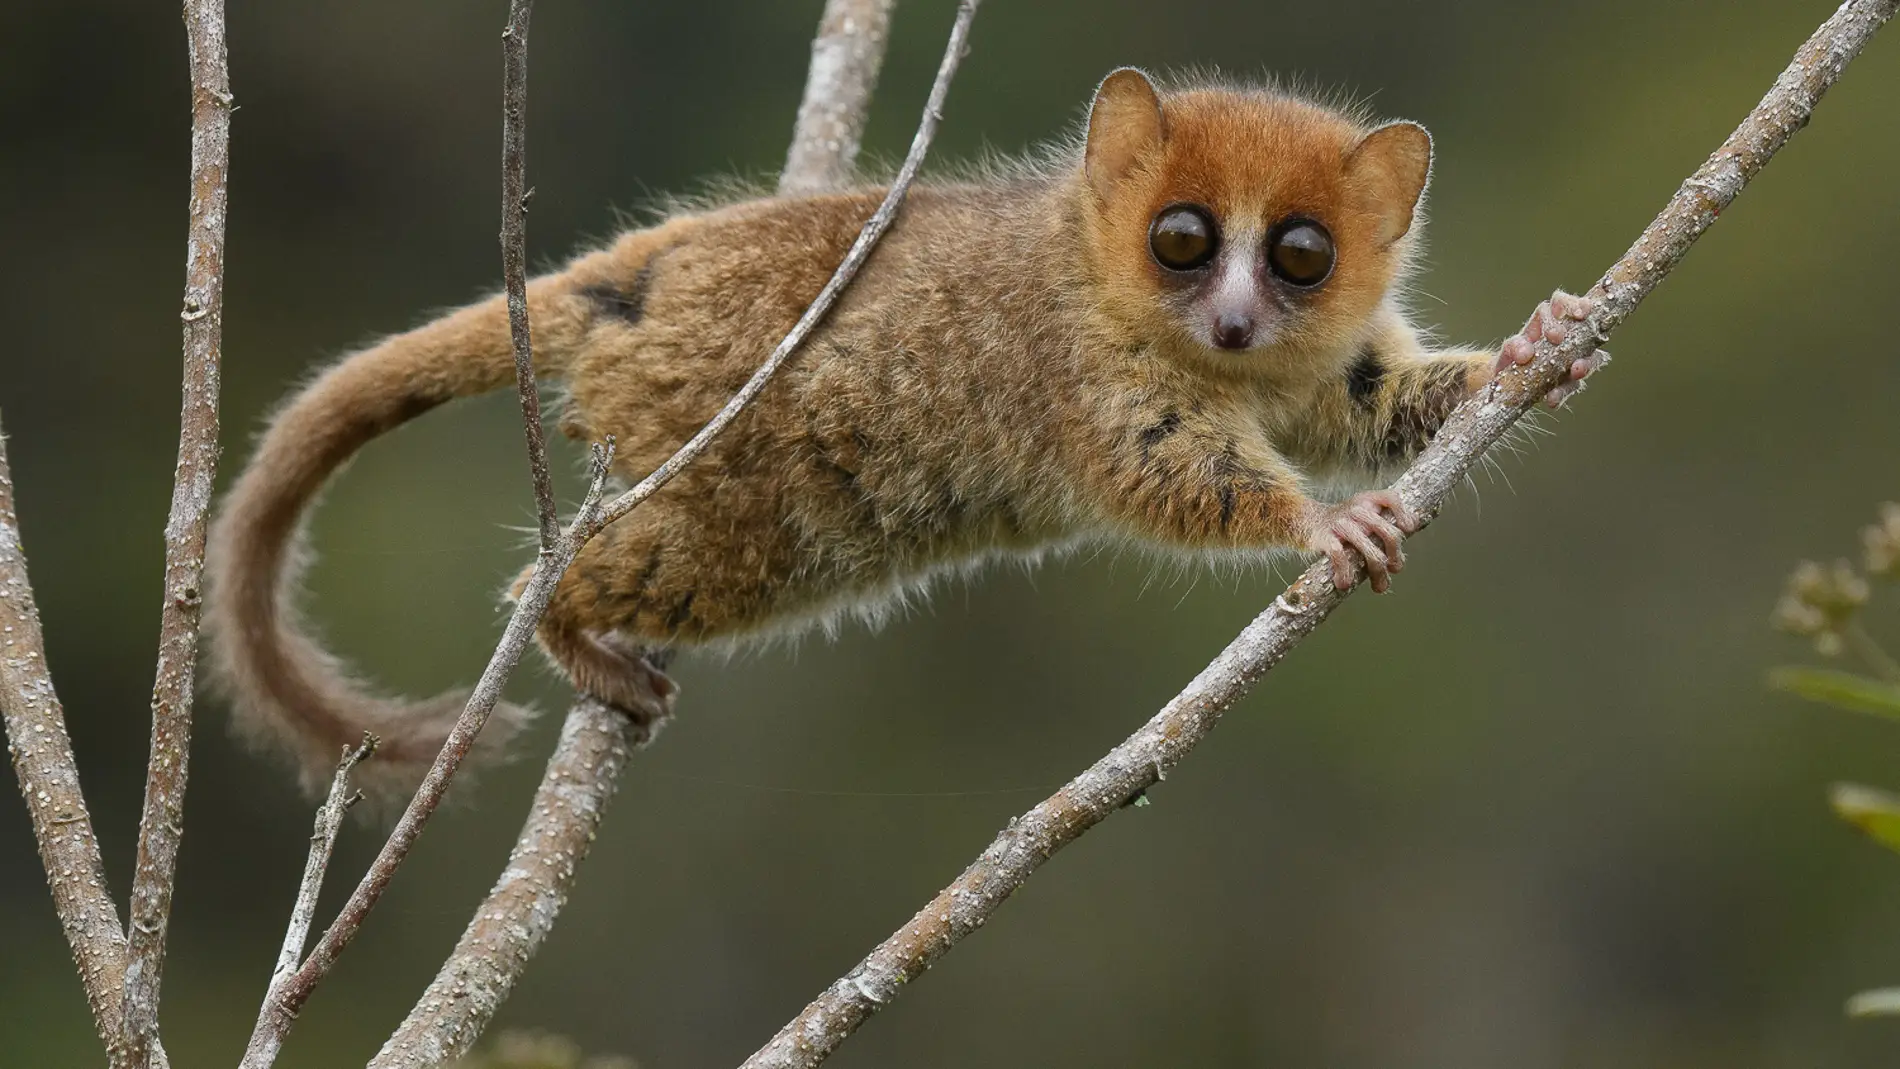 Madagascar 23 millones de anos de evolucion en peligro